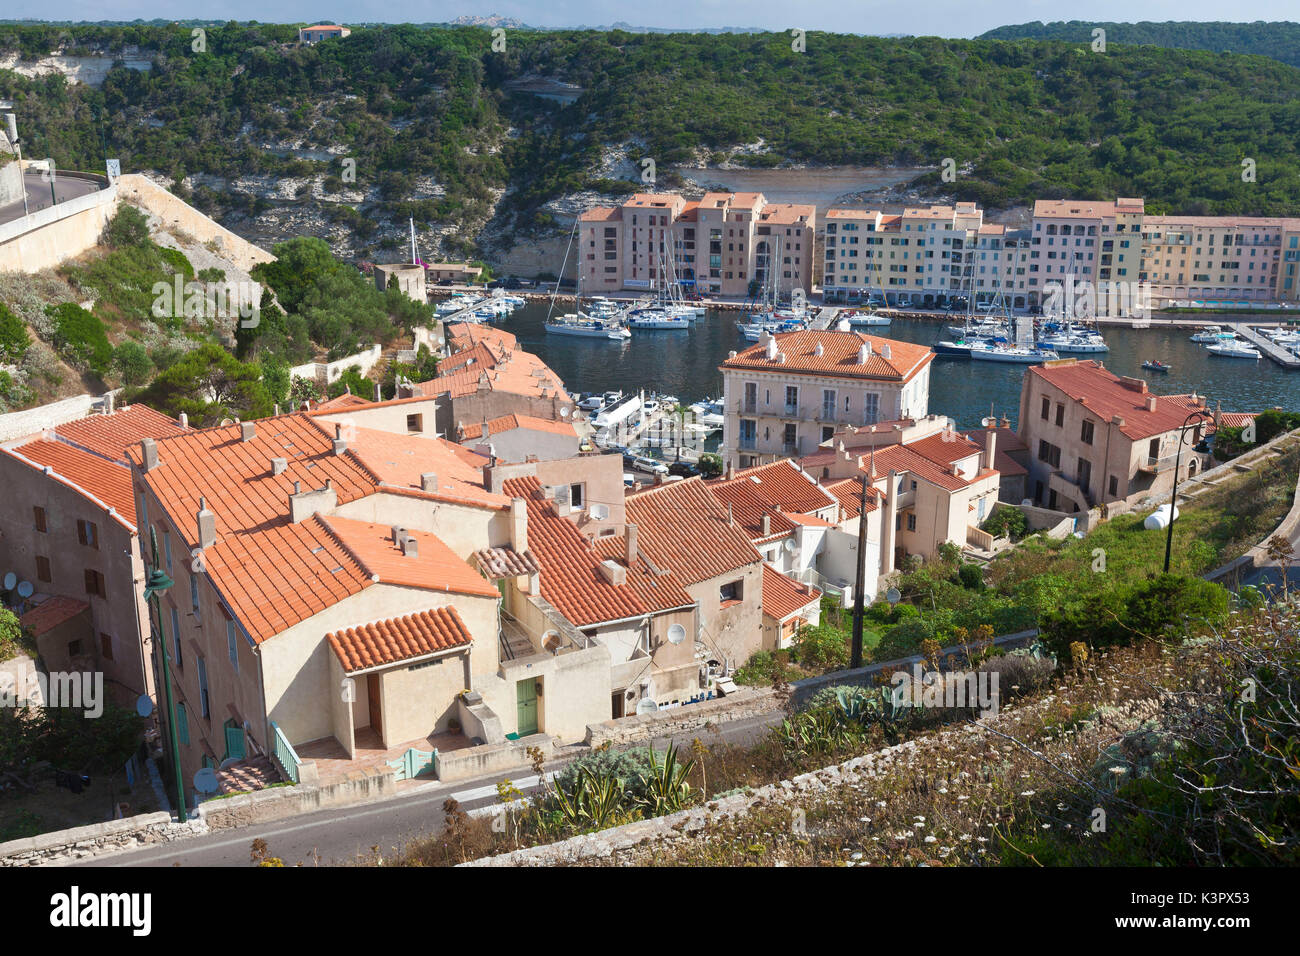 L'architecture typique des maisons et bâtiments de la vieille ville encadrée par le port Bonifacio Corse France Europe Banque D'Images